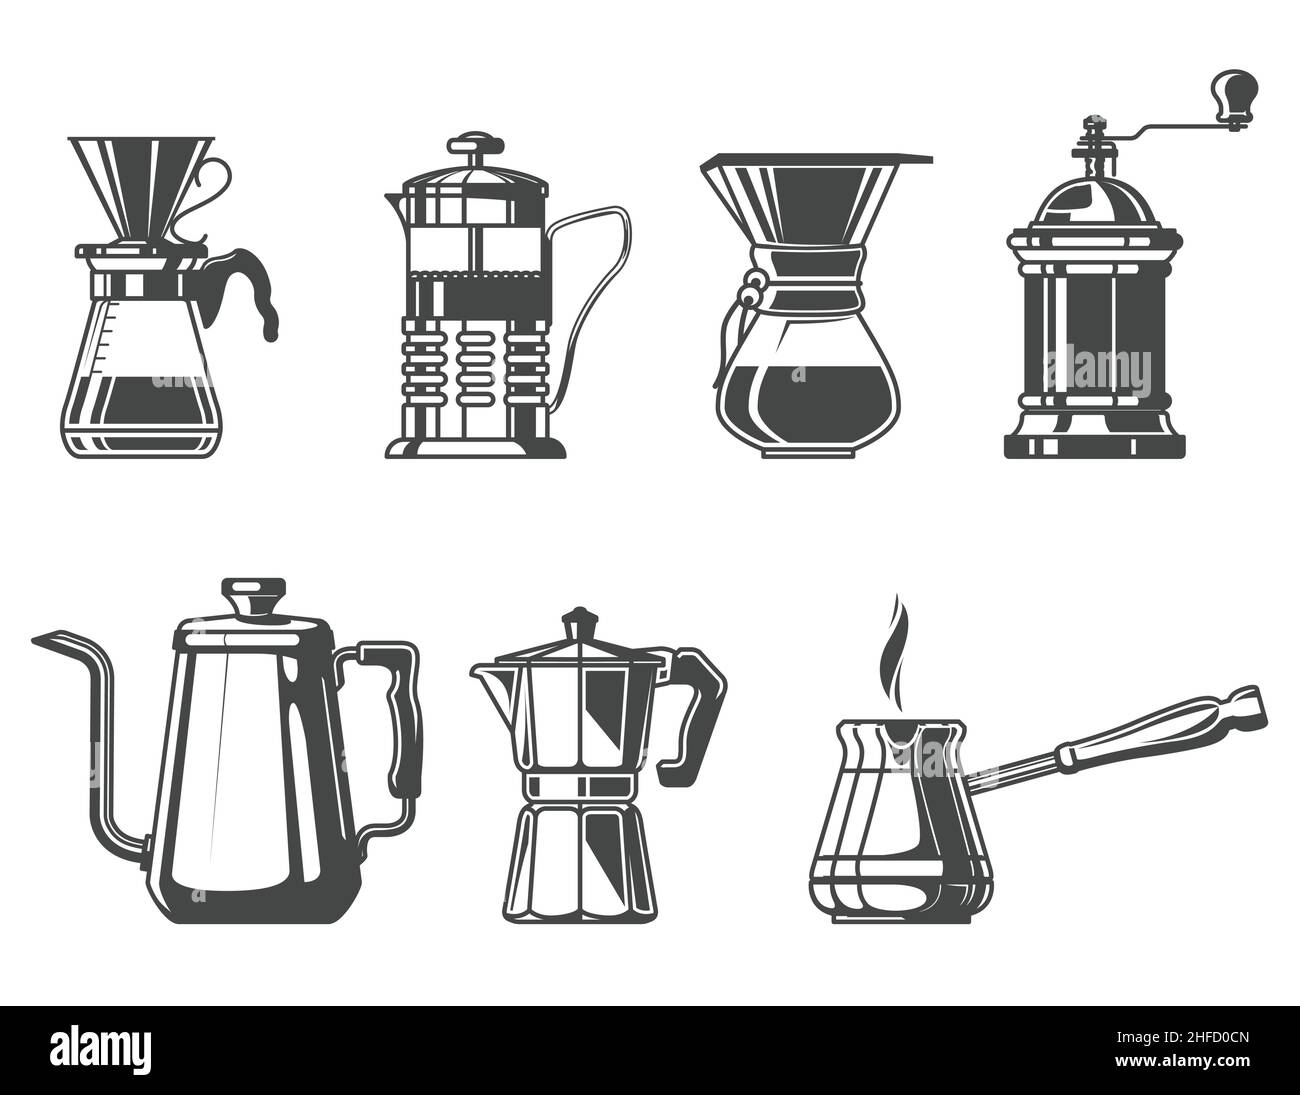 Gebrühter Kaffee und Tee, französische Presse, Cezve, Wasserkocher und Mokakapfanne, Barista-Werkzeuge, Vektor Stock Vektor